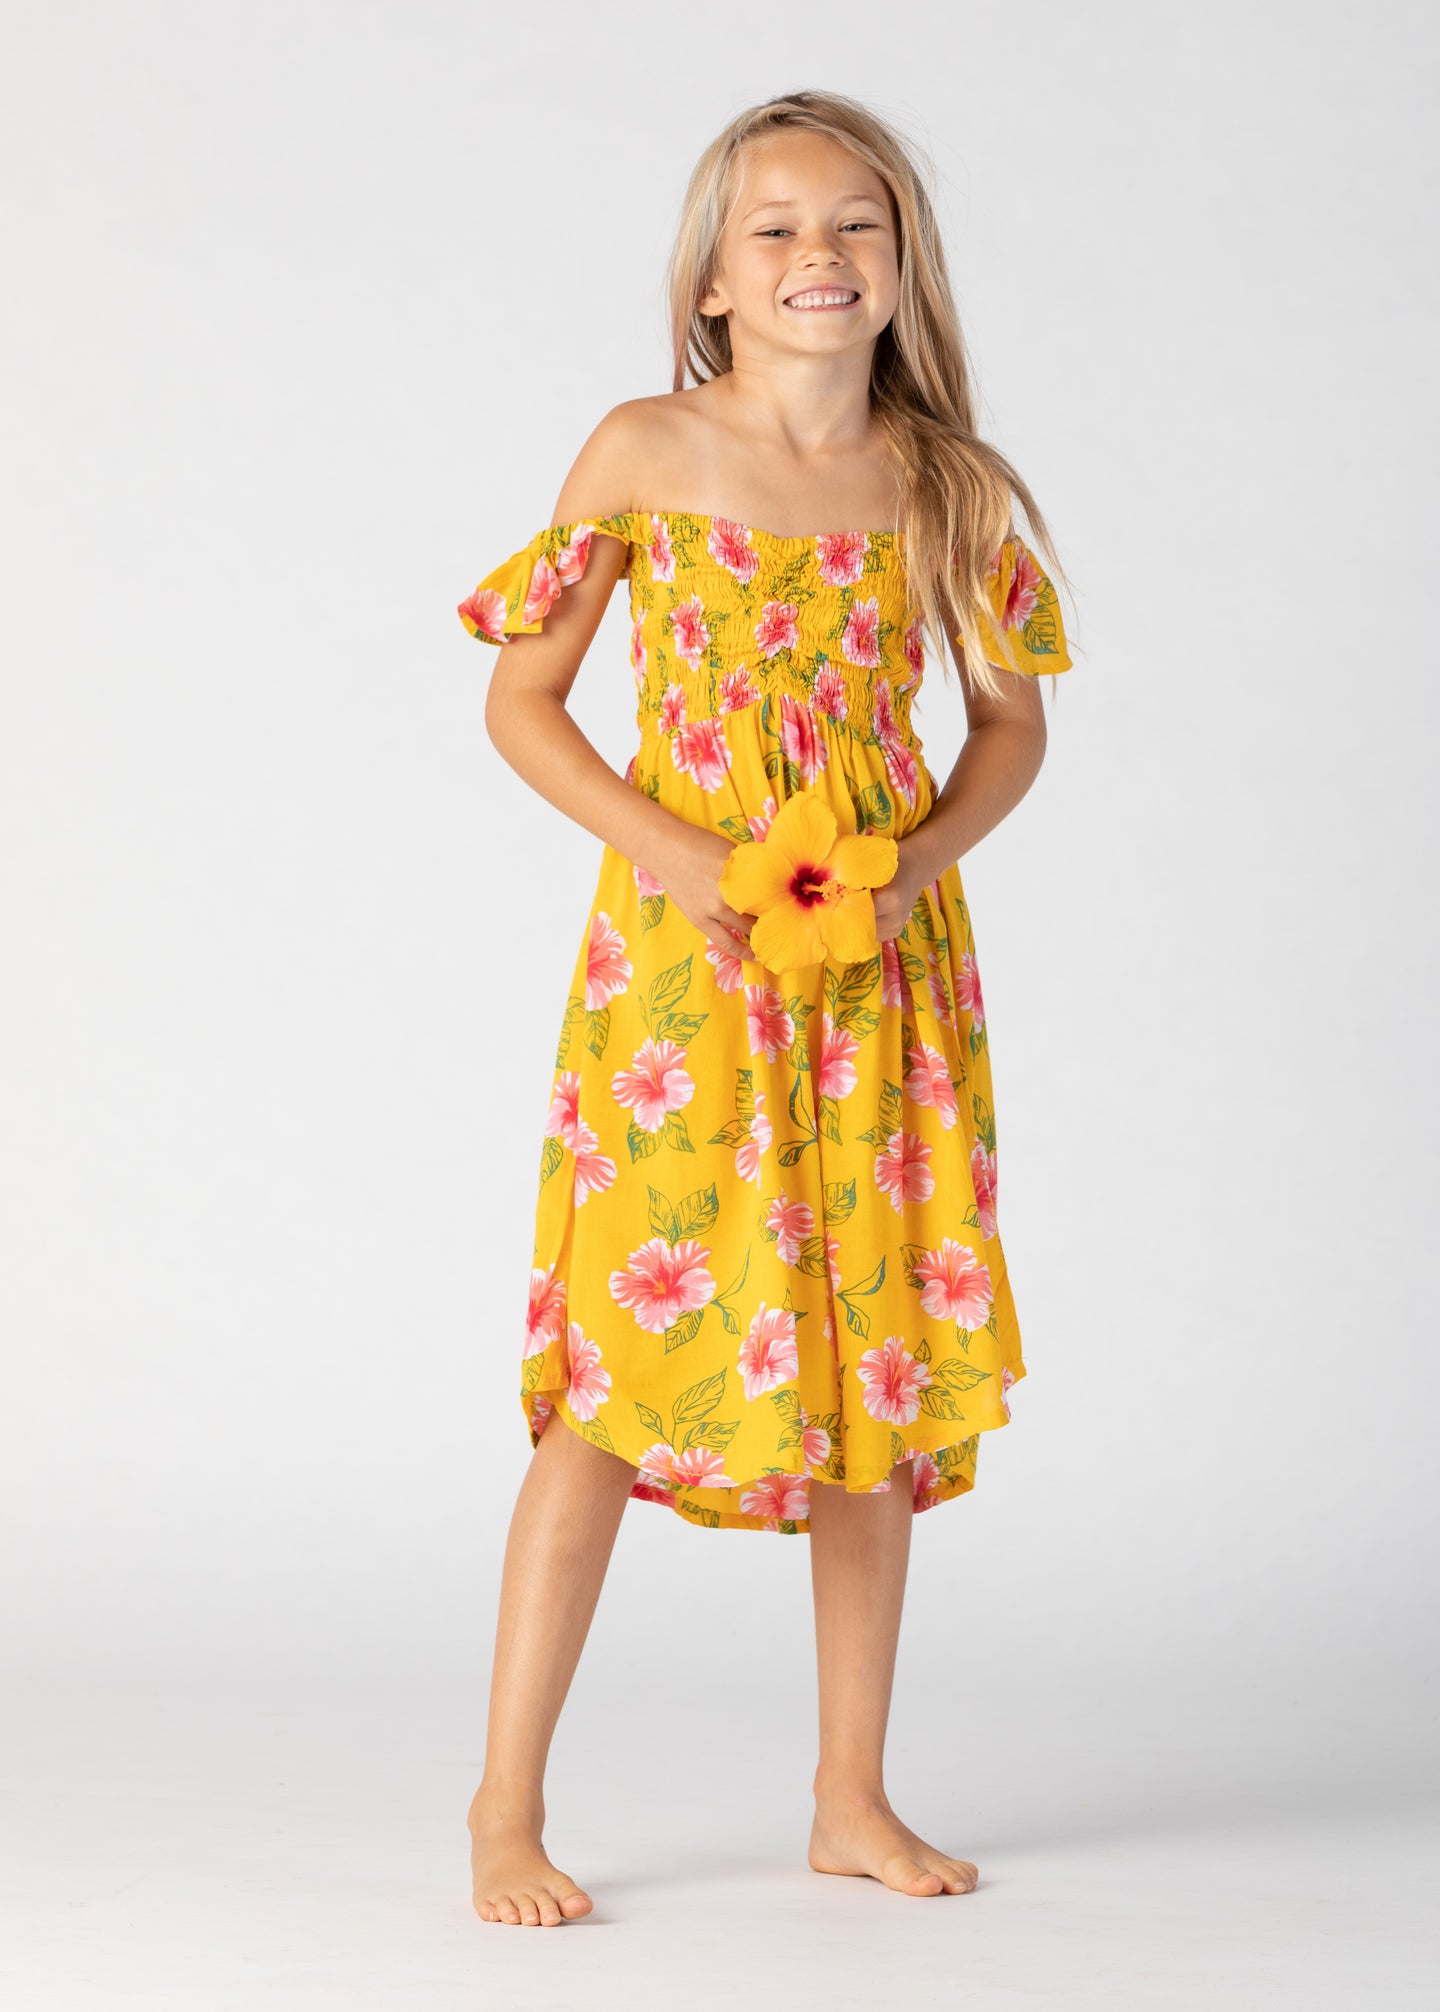 Tiare Hawaii Kids Hollie Dress | Aloha Floral Sunshine